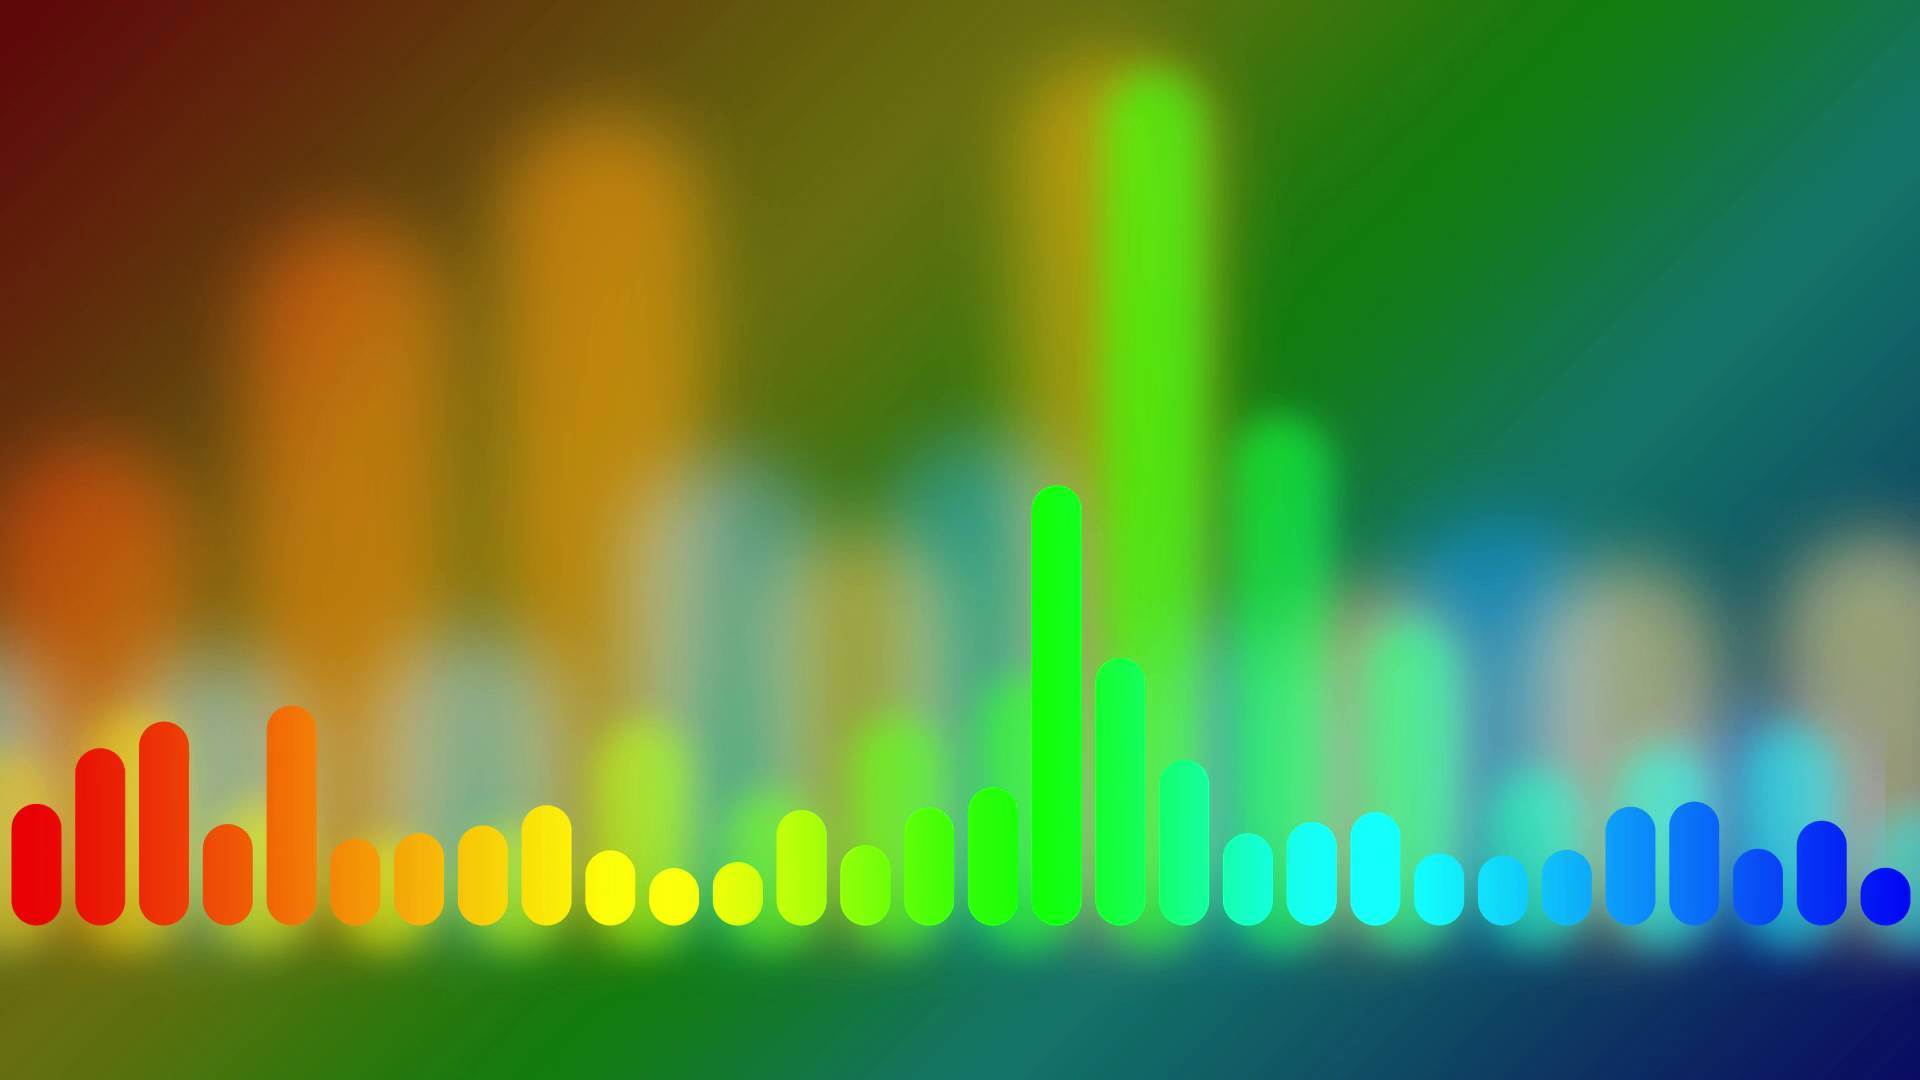 Rainbow Music Equalizer animated background